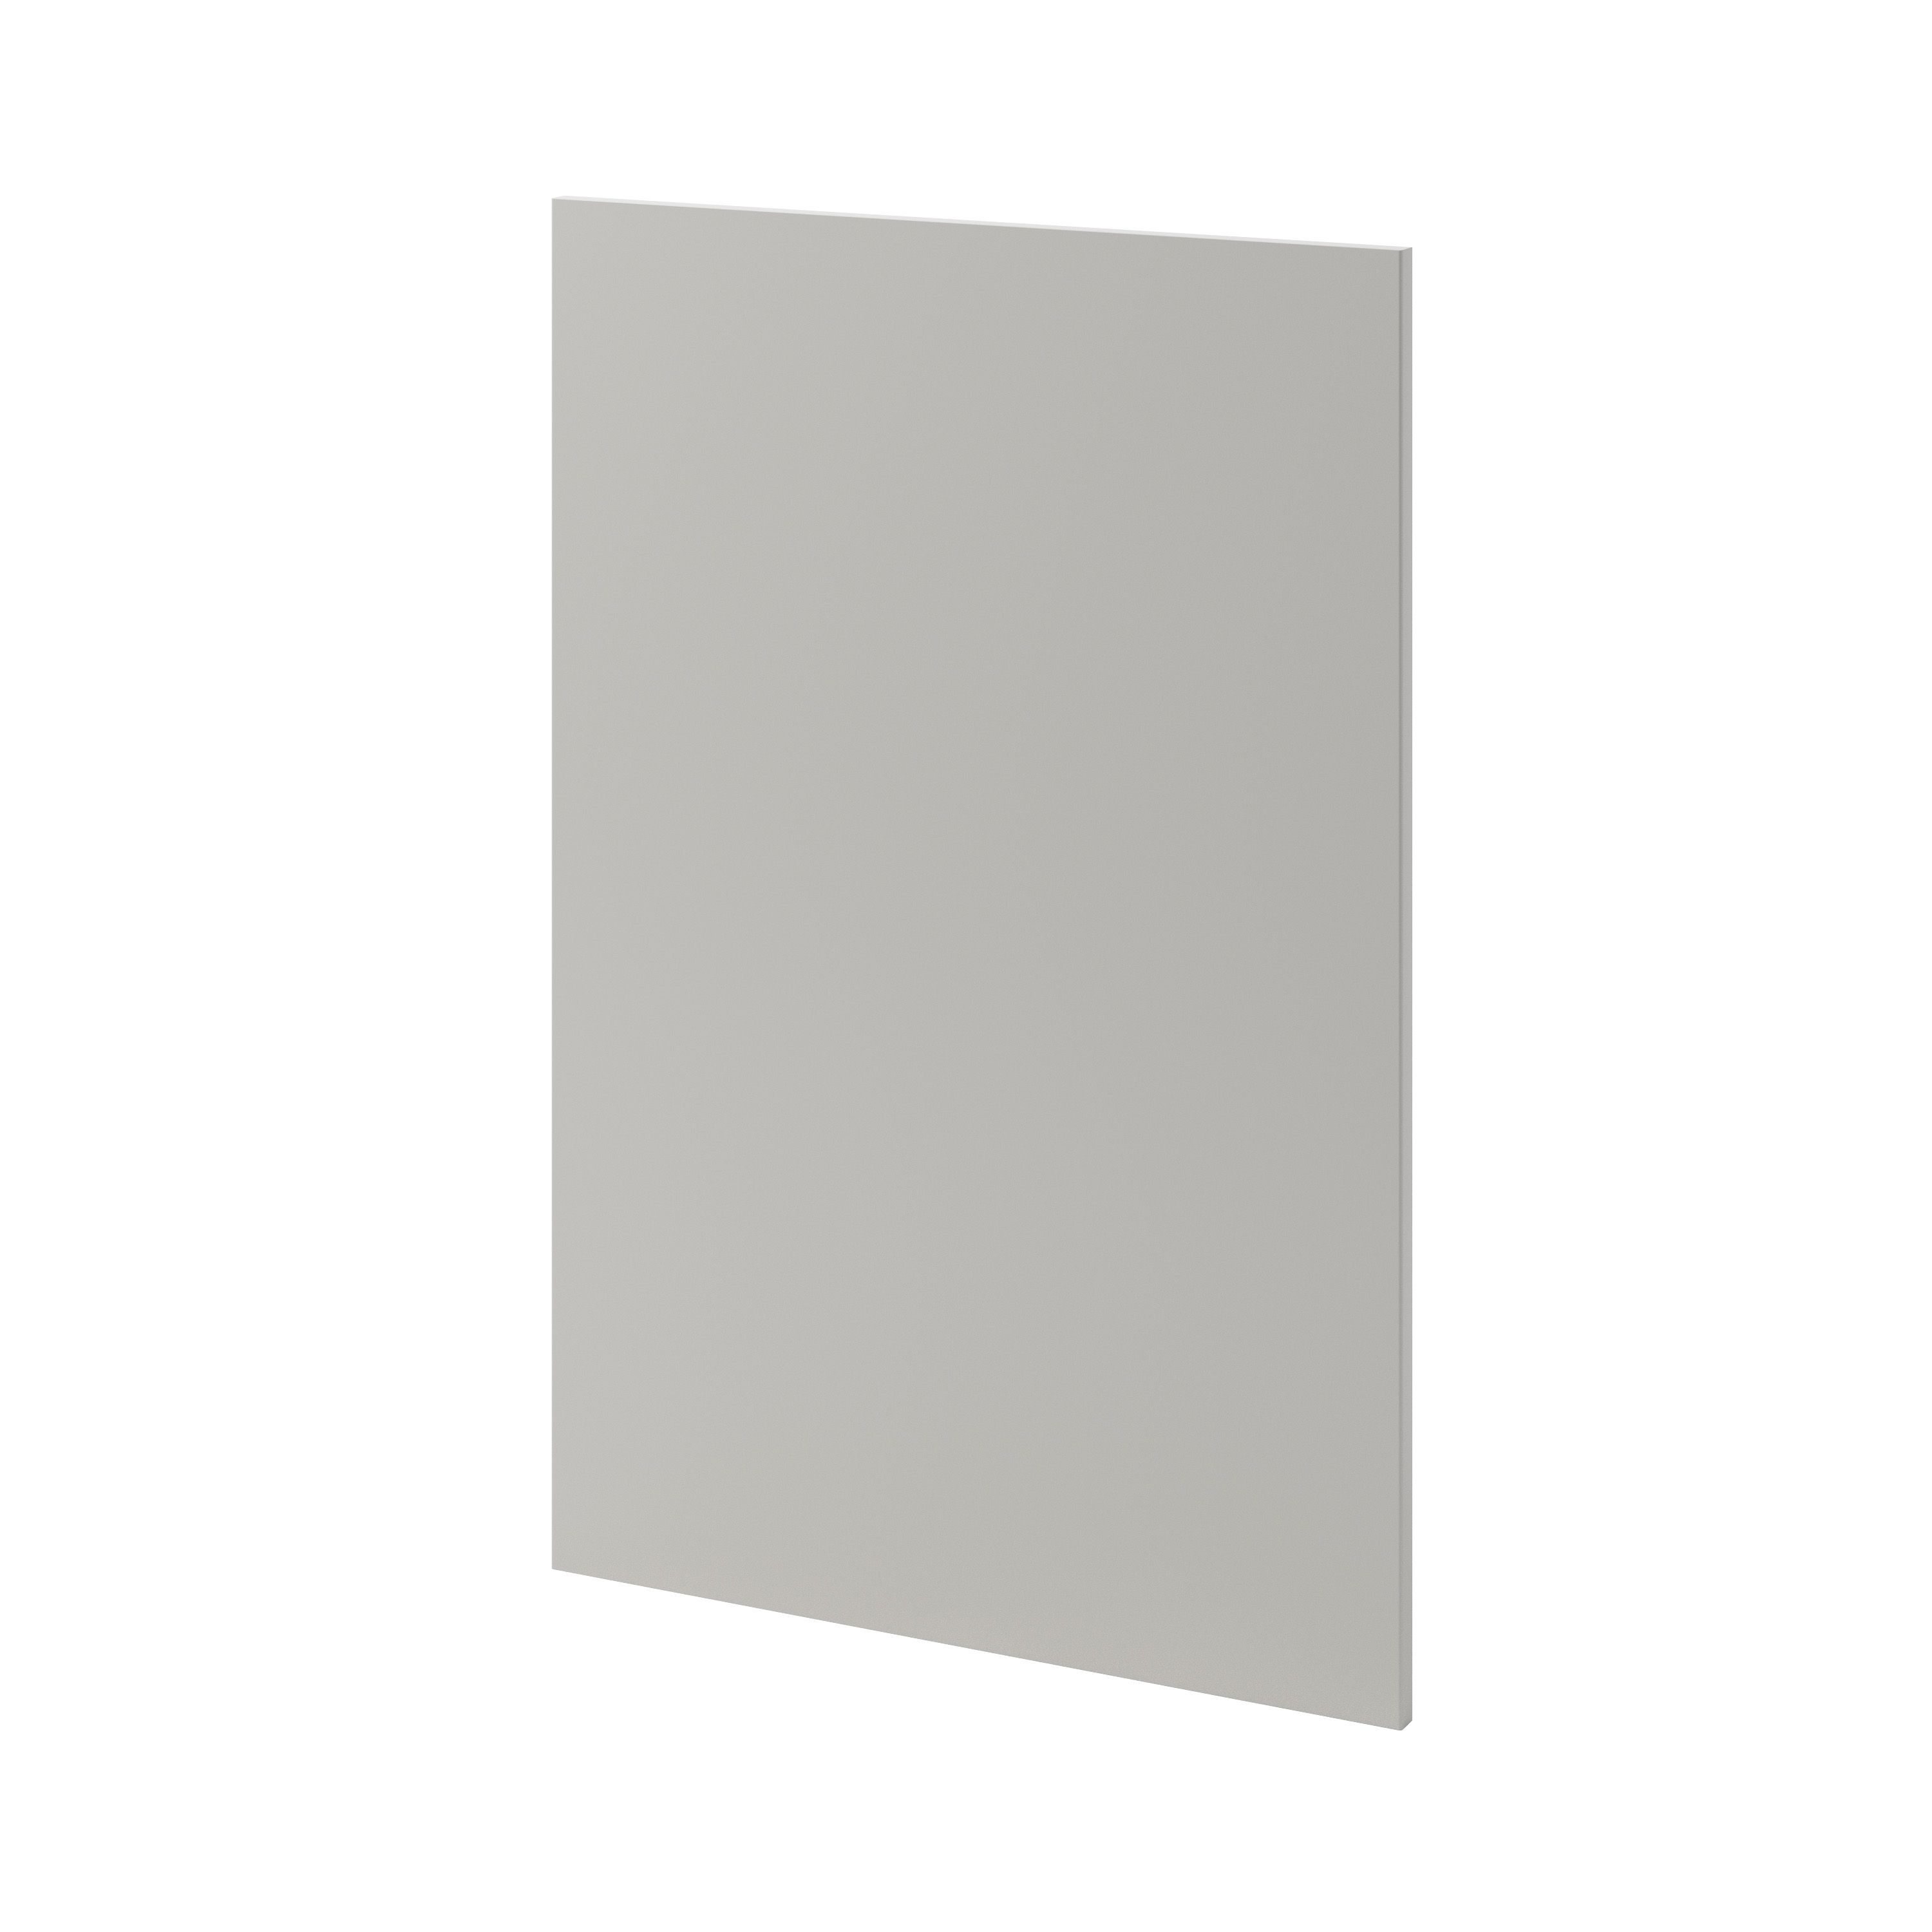 GoodHome Stevia Matt Pewter grey slab Tall wall Cabinet door (W)600mm (H)895mm (T)18mm